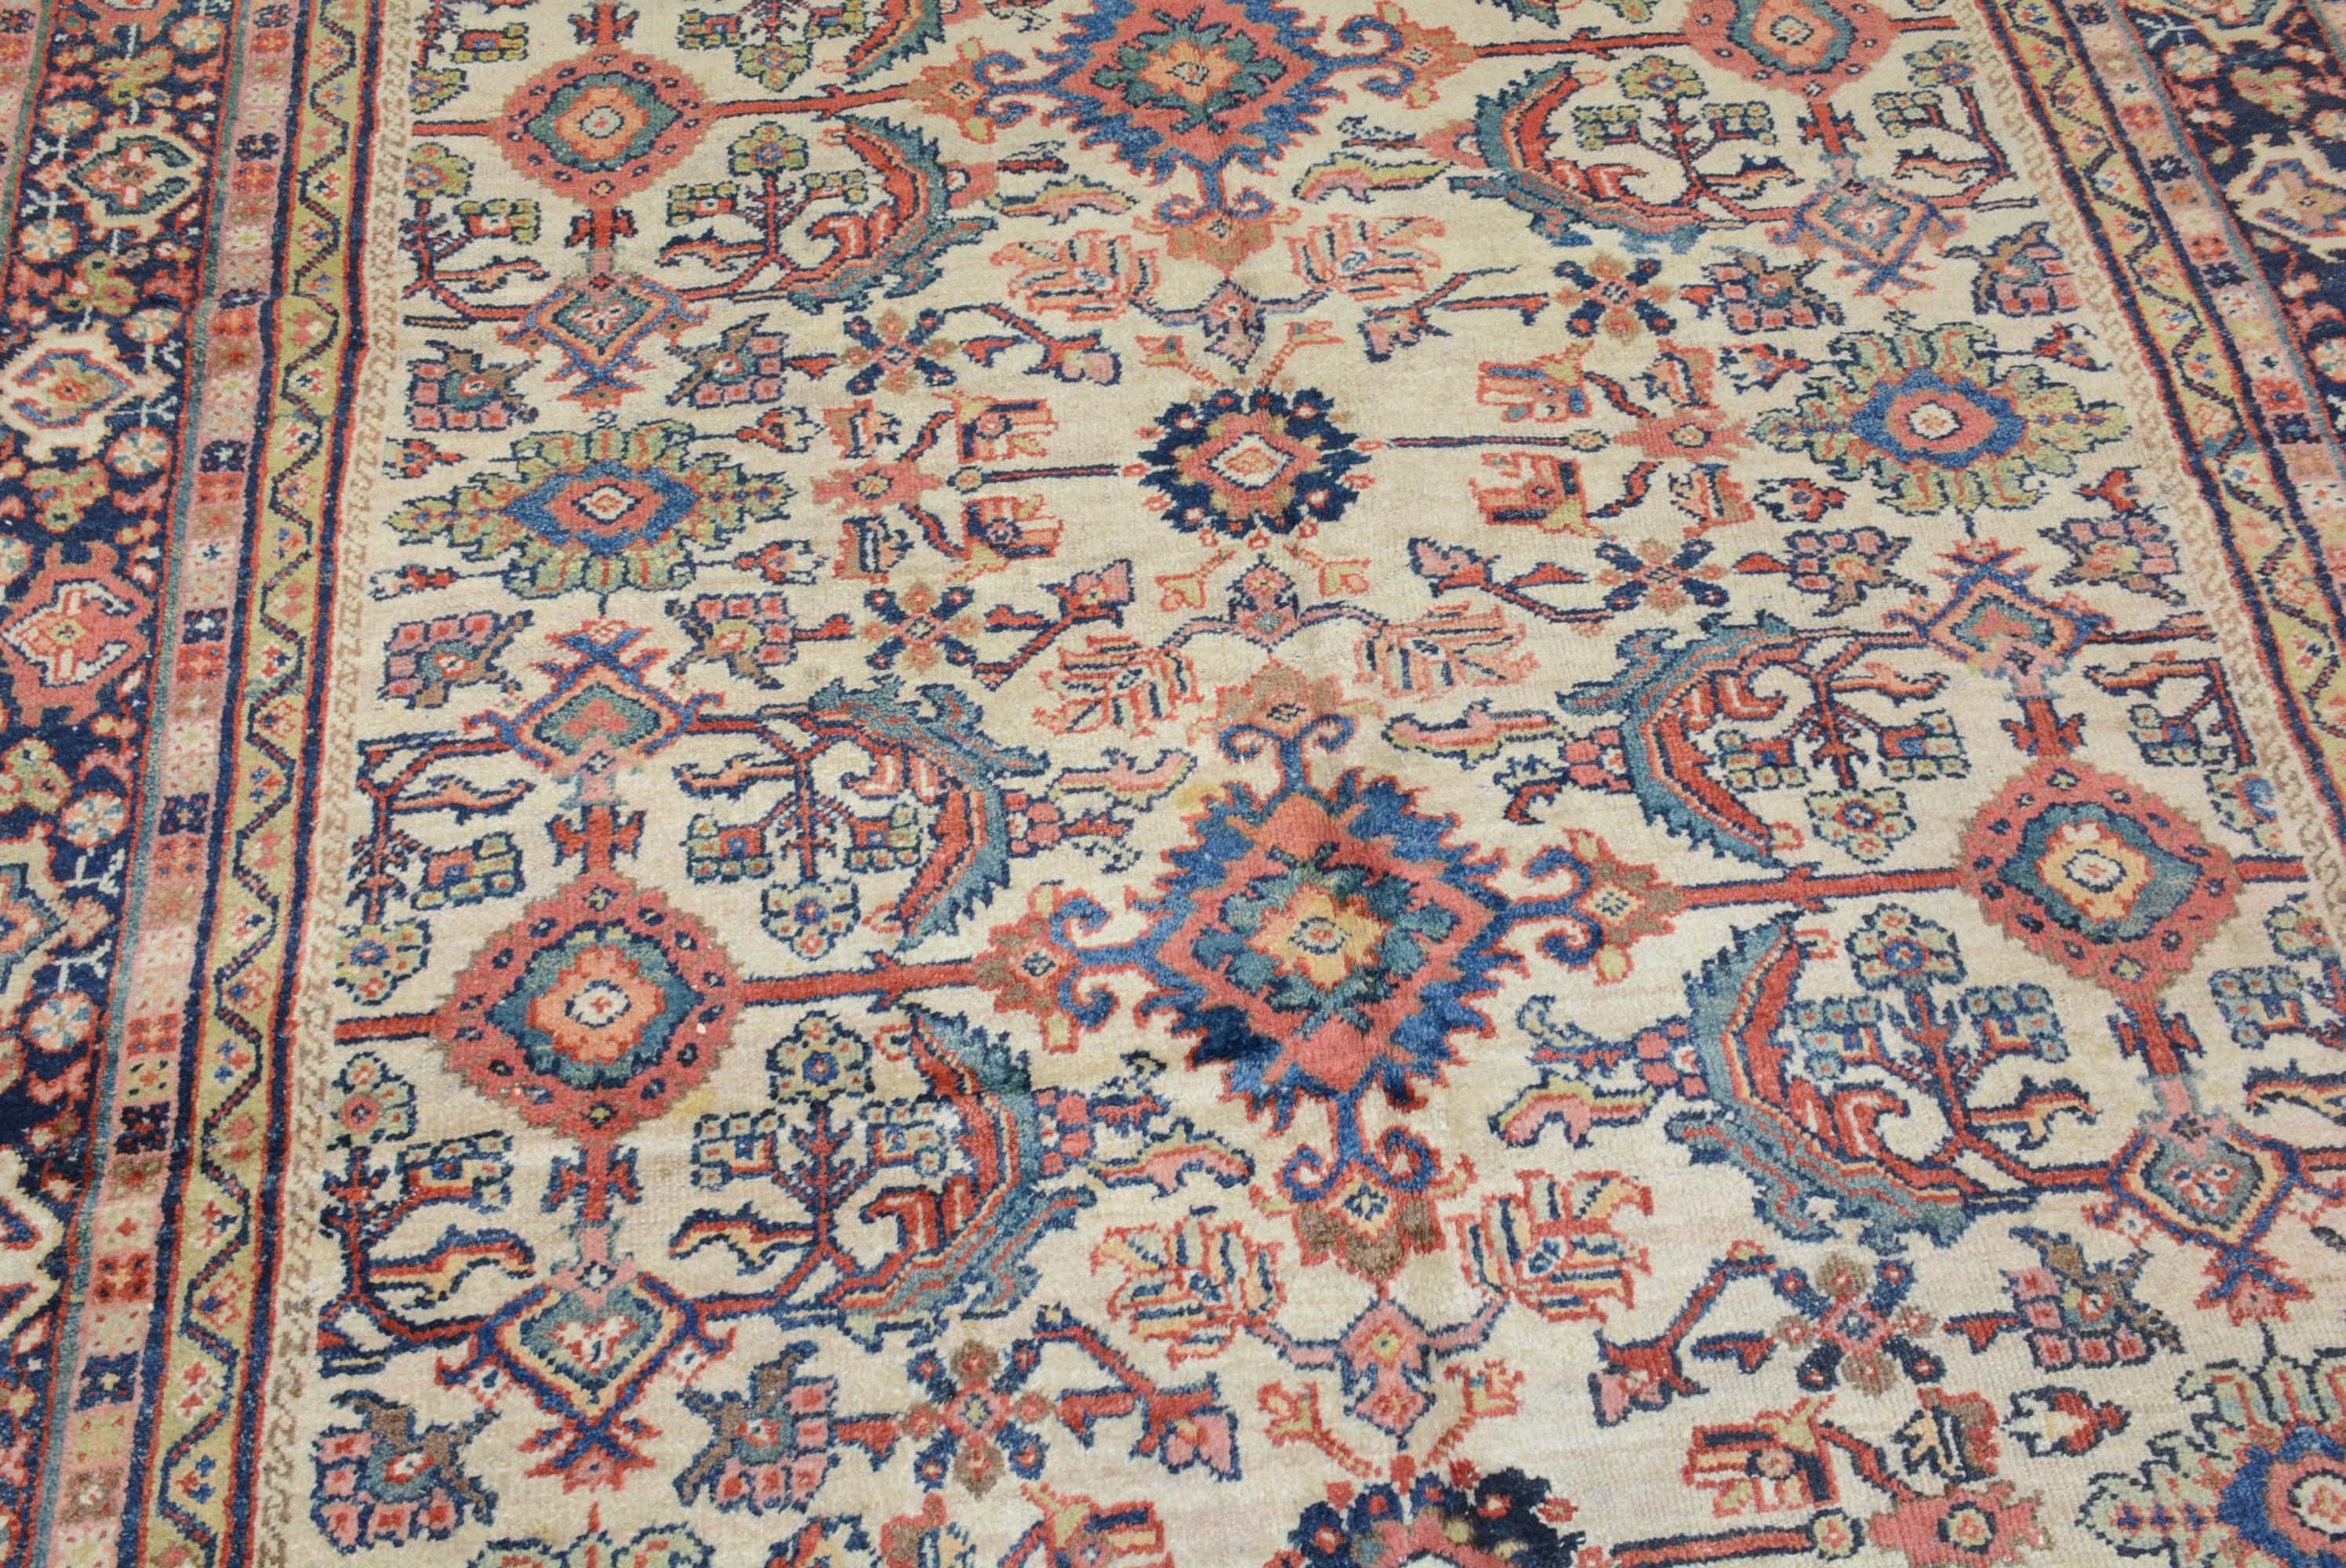 La région d'Arak, dans le centre de la Perse, est généralement considérée comme ayant produit plus de grands tapis que n'importe quelle autre province du pays. Au cours de la seconde moitié du XIXe siècle, une nouvelle production de tapis a